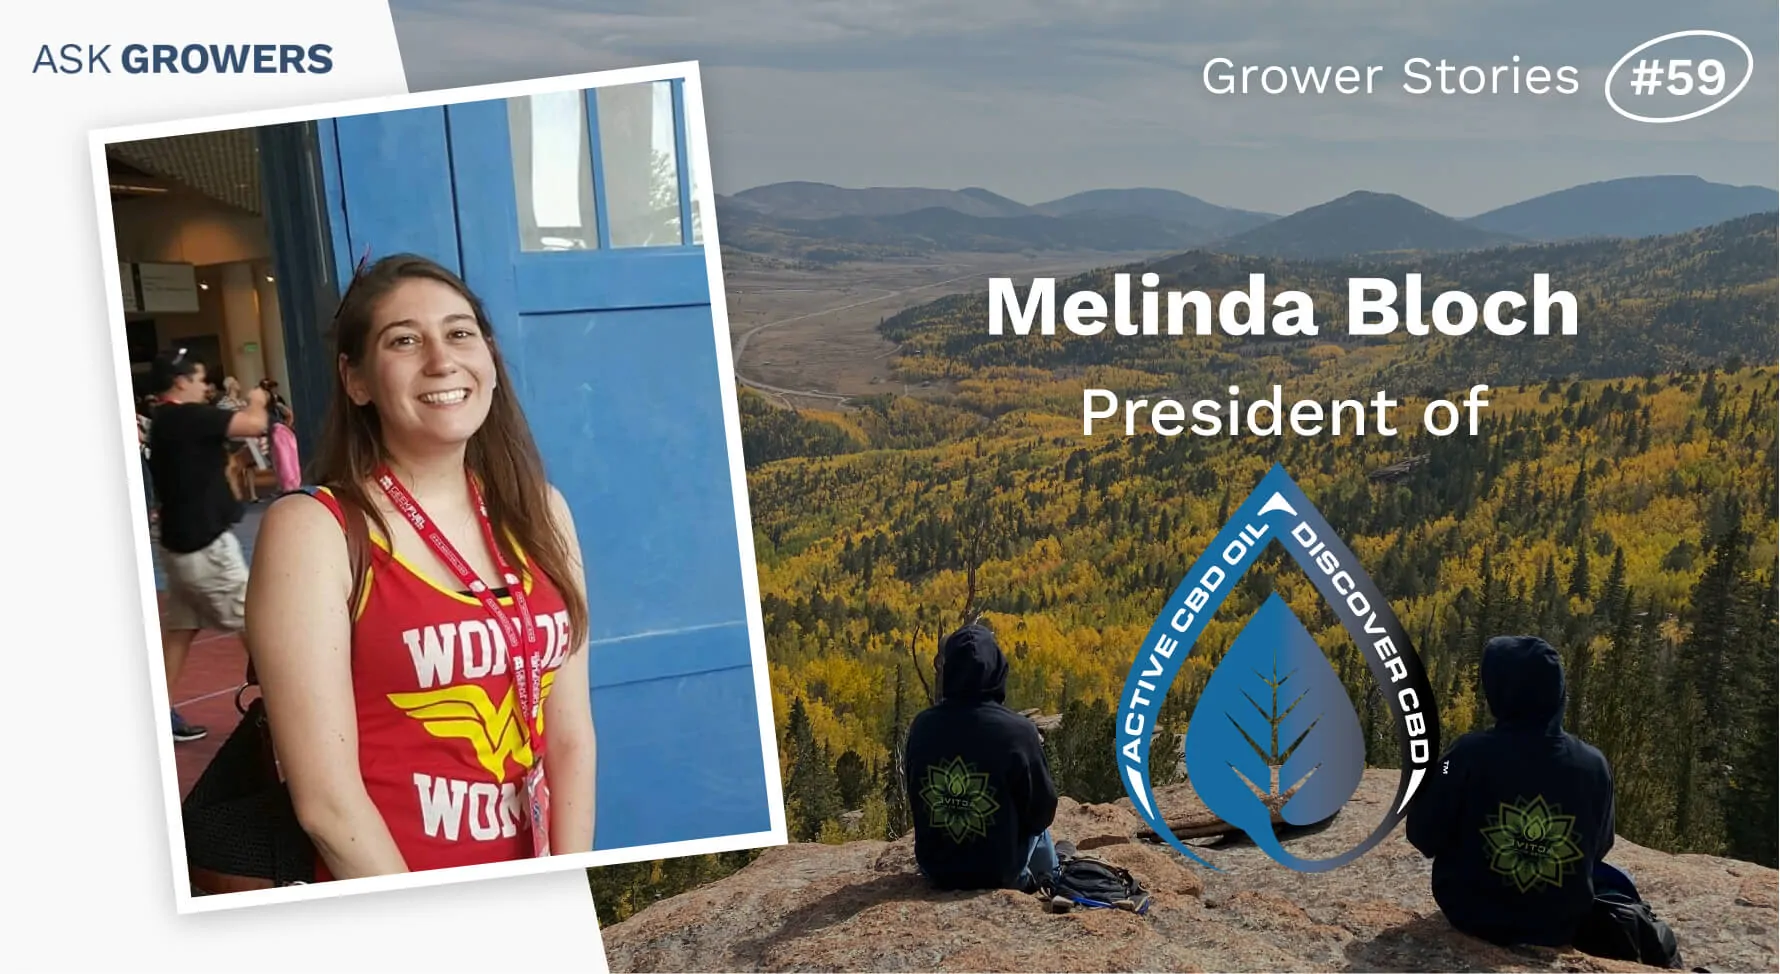 Grower Stories #59: Melinda Bloch